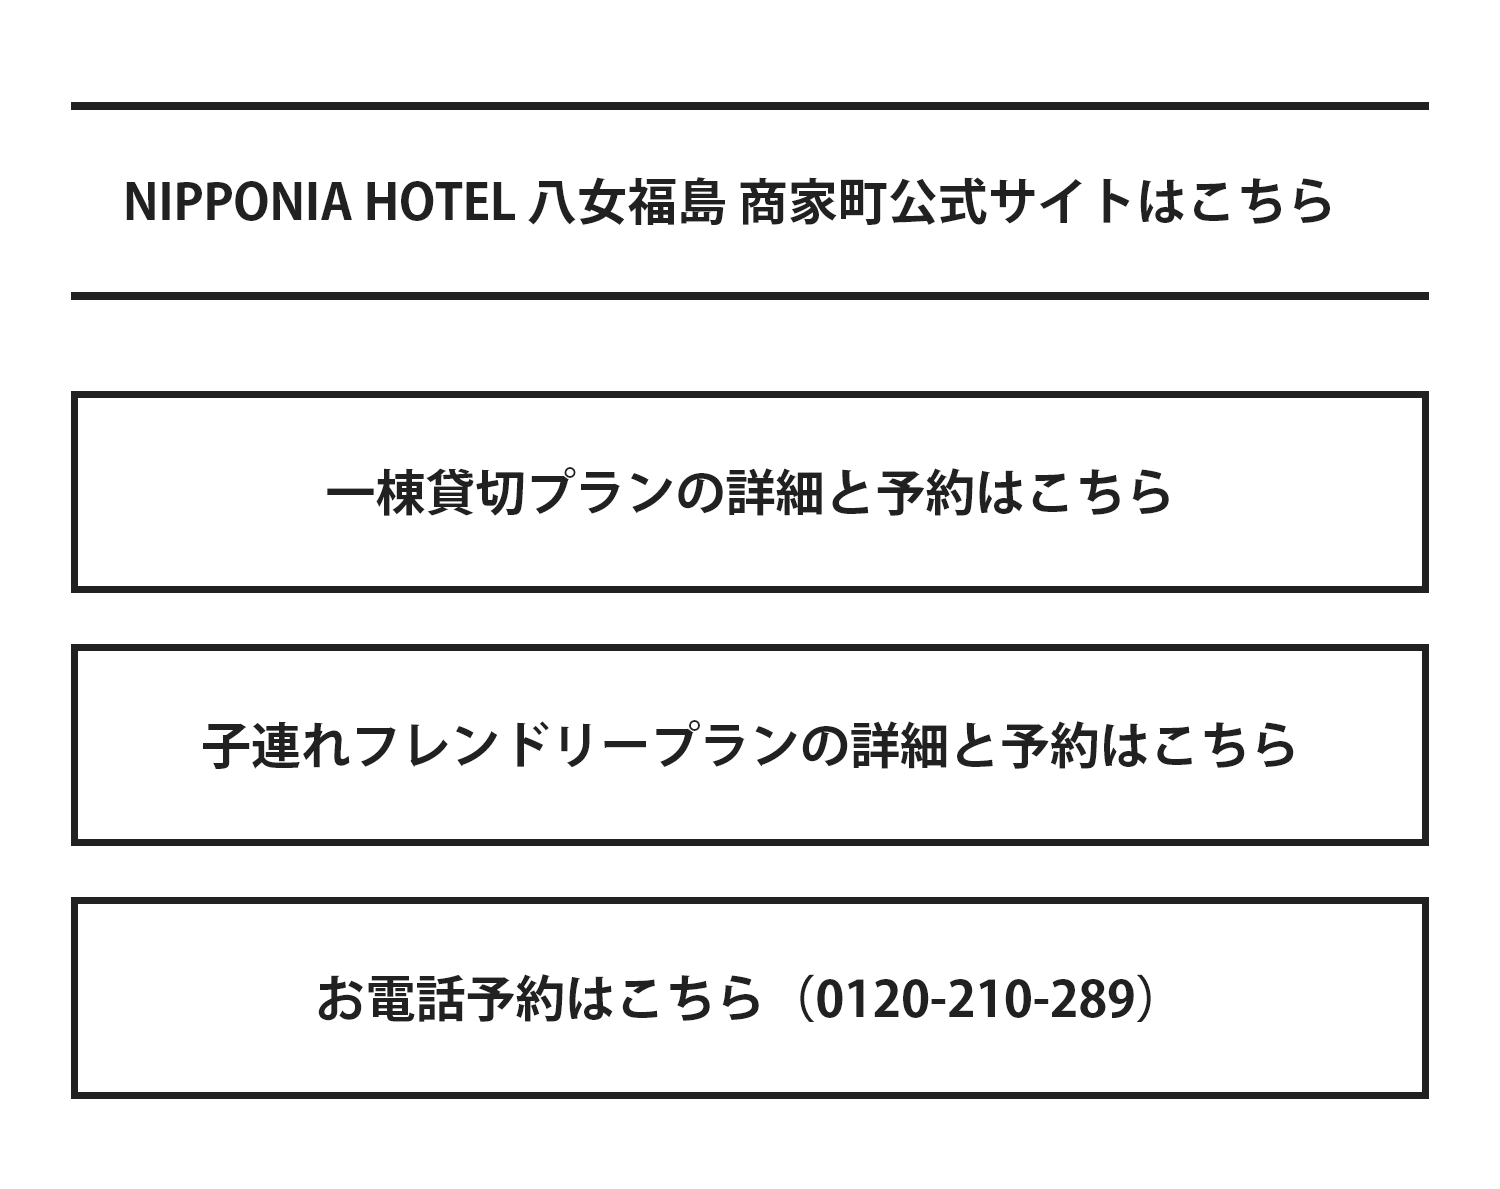 NIPPONIA HOTEL 八女福島 商家町 公式サイト・プラン詳細とご予約・お電話予約